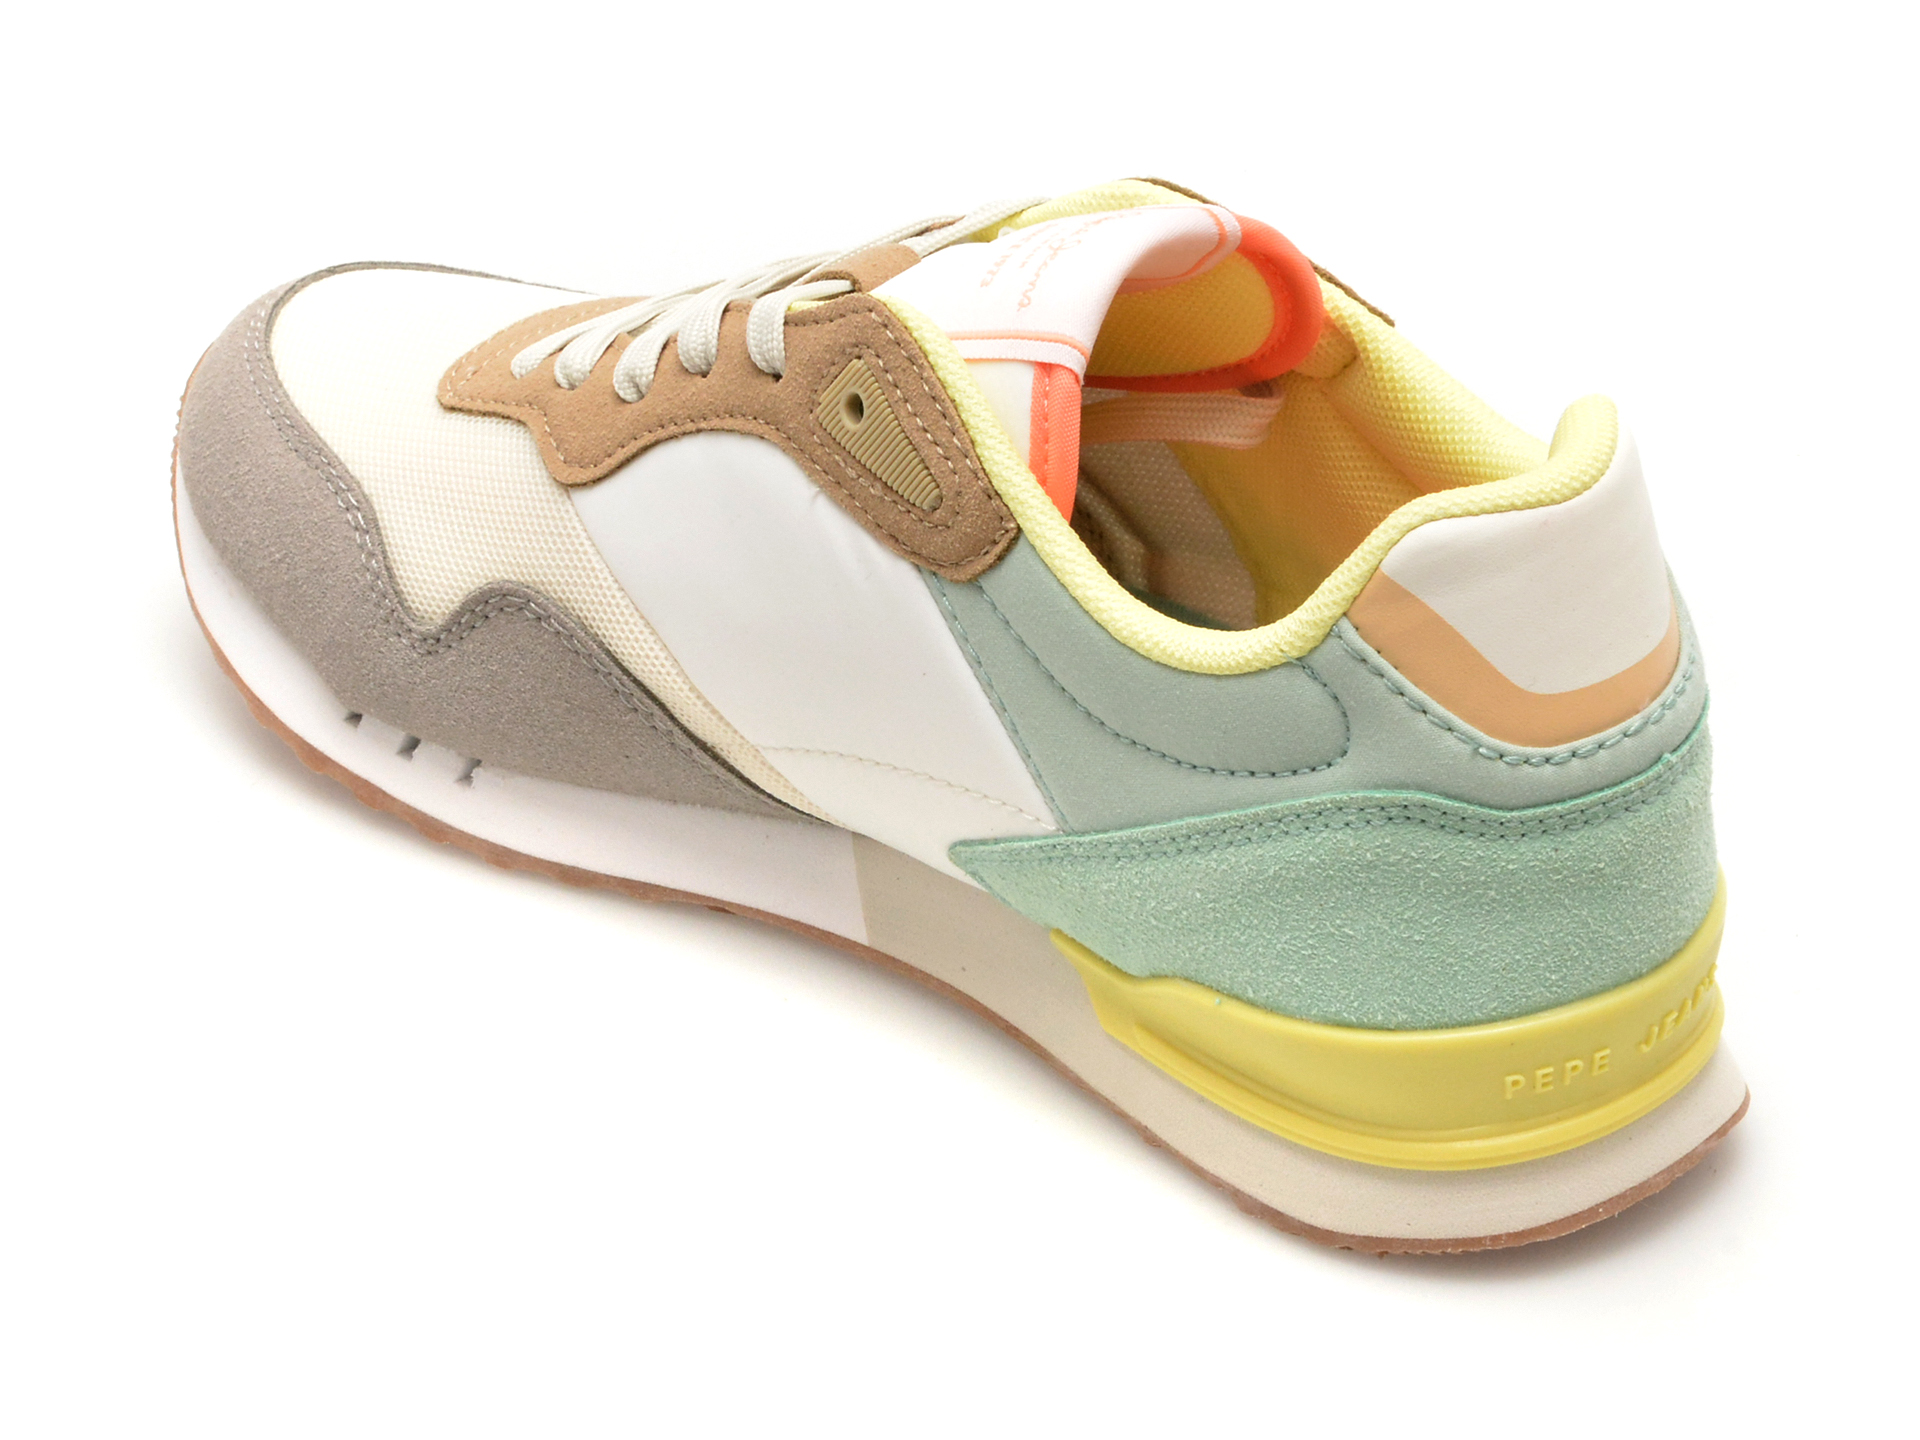 Poze Pantofi PEPE JEANS multicolor, LS40005, din piele ecologica Otter